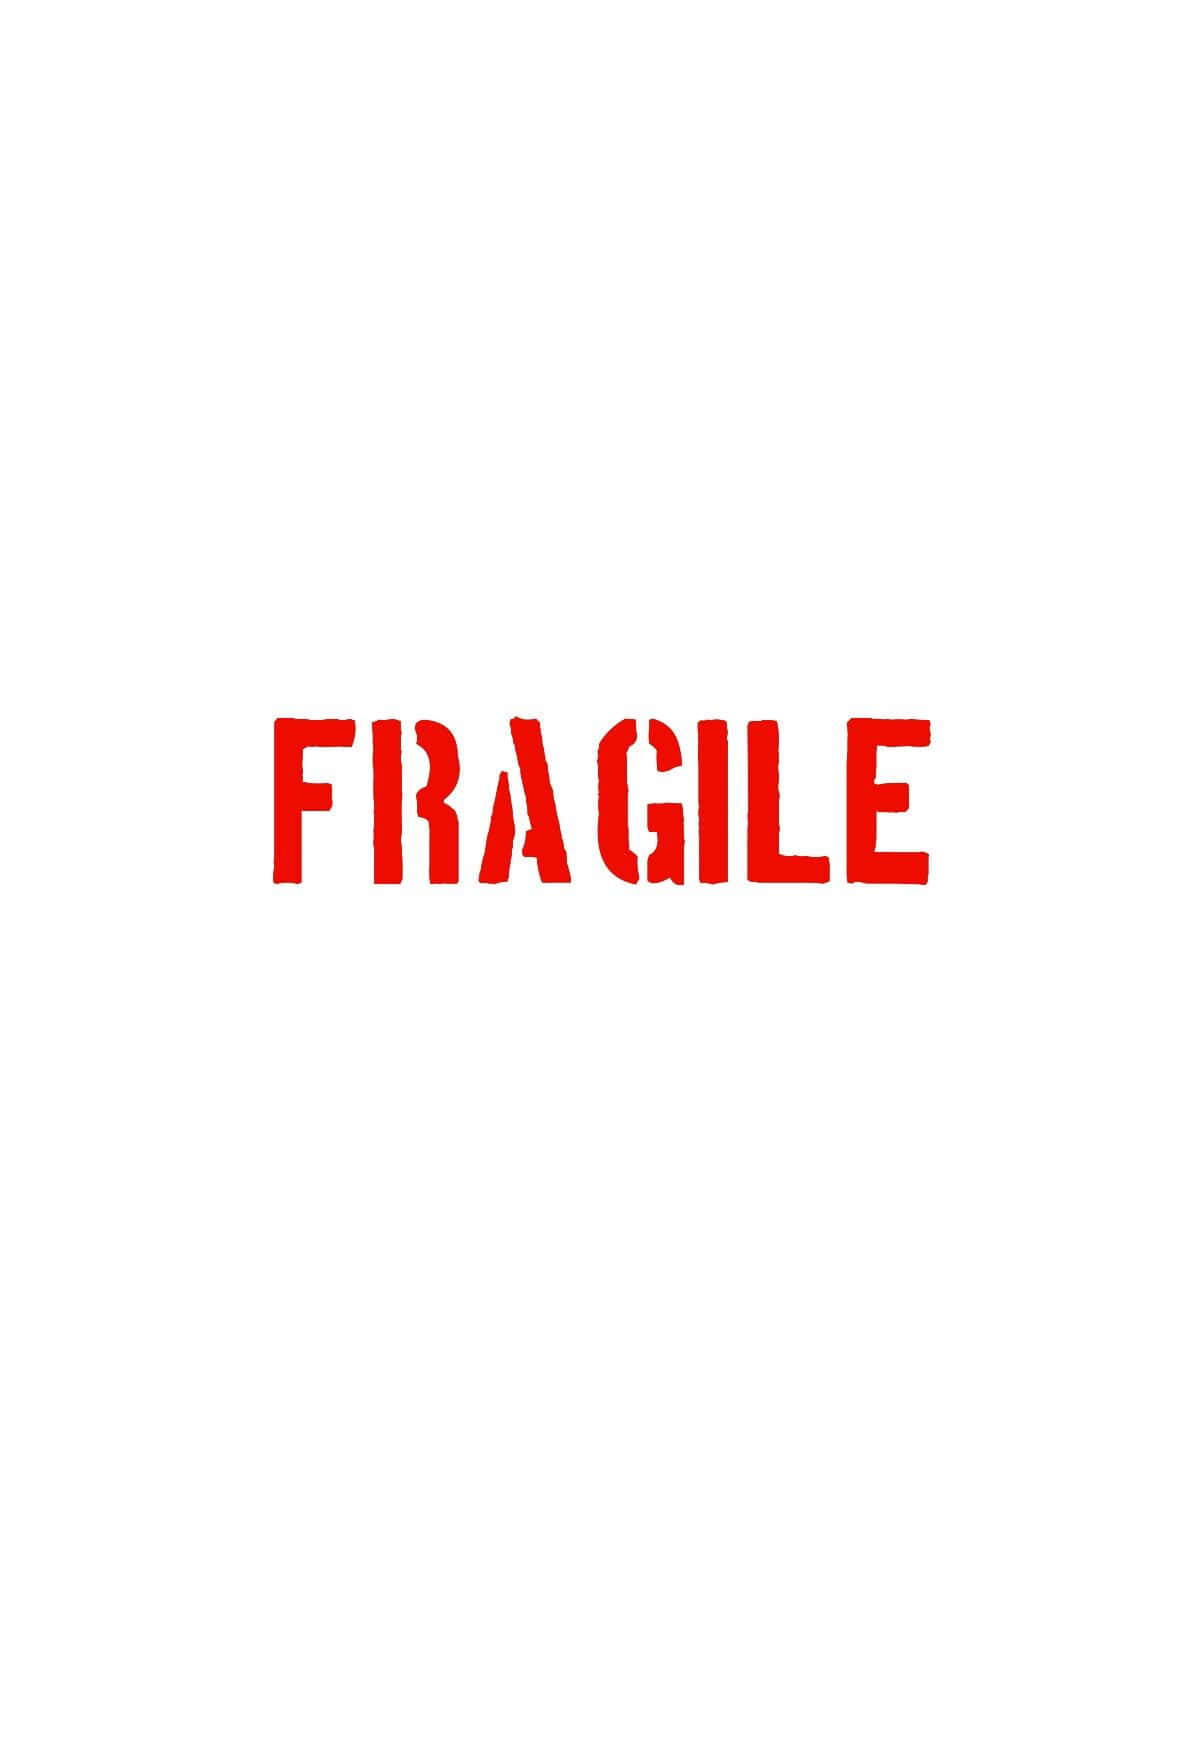 Fragile Word Wallpaper